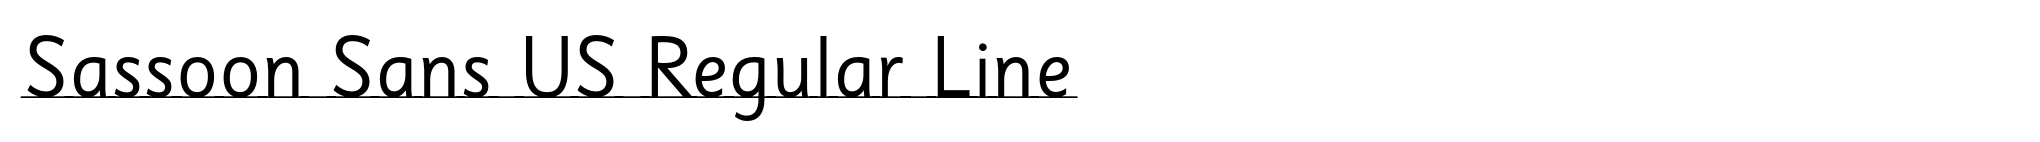 Sassoon Sans US Regular Line image